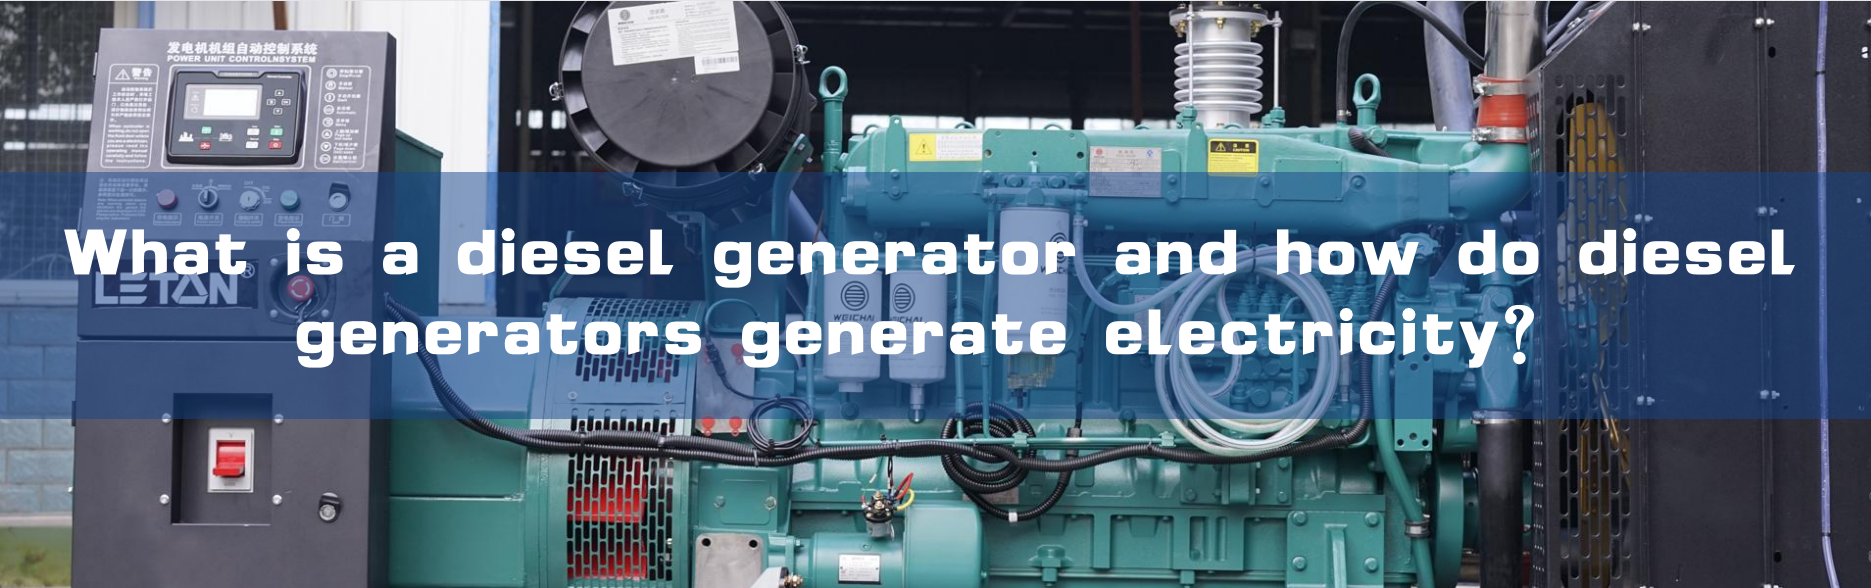 دیزل ژنراتور چیست و دیزل ژنراتورها چگونه برق تولید می کنند؟